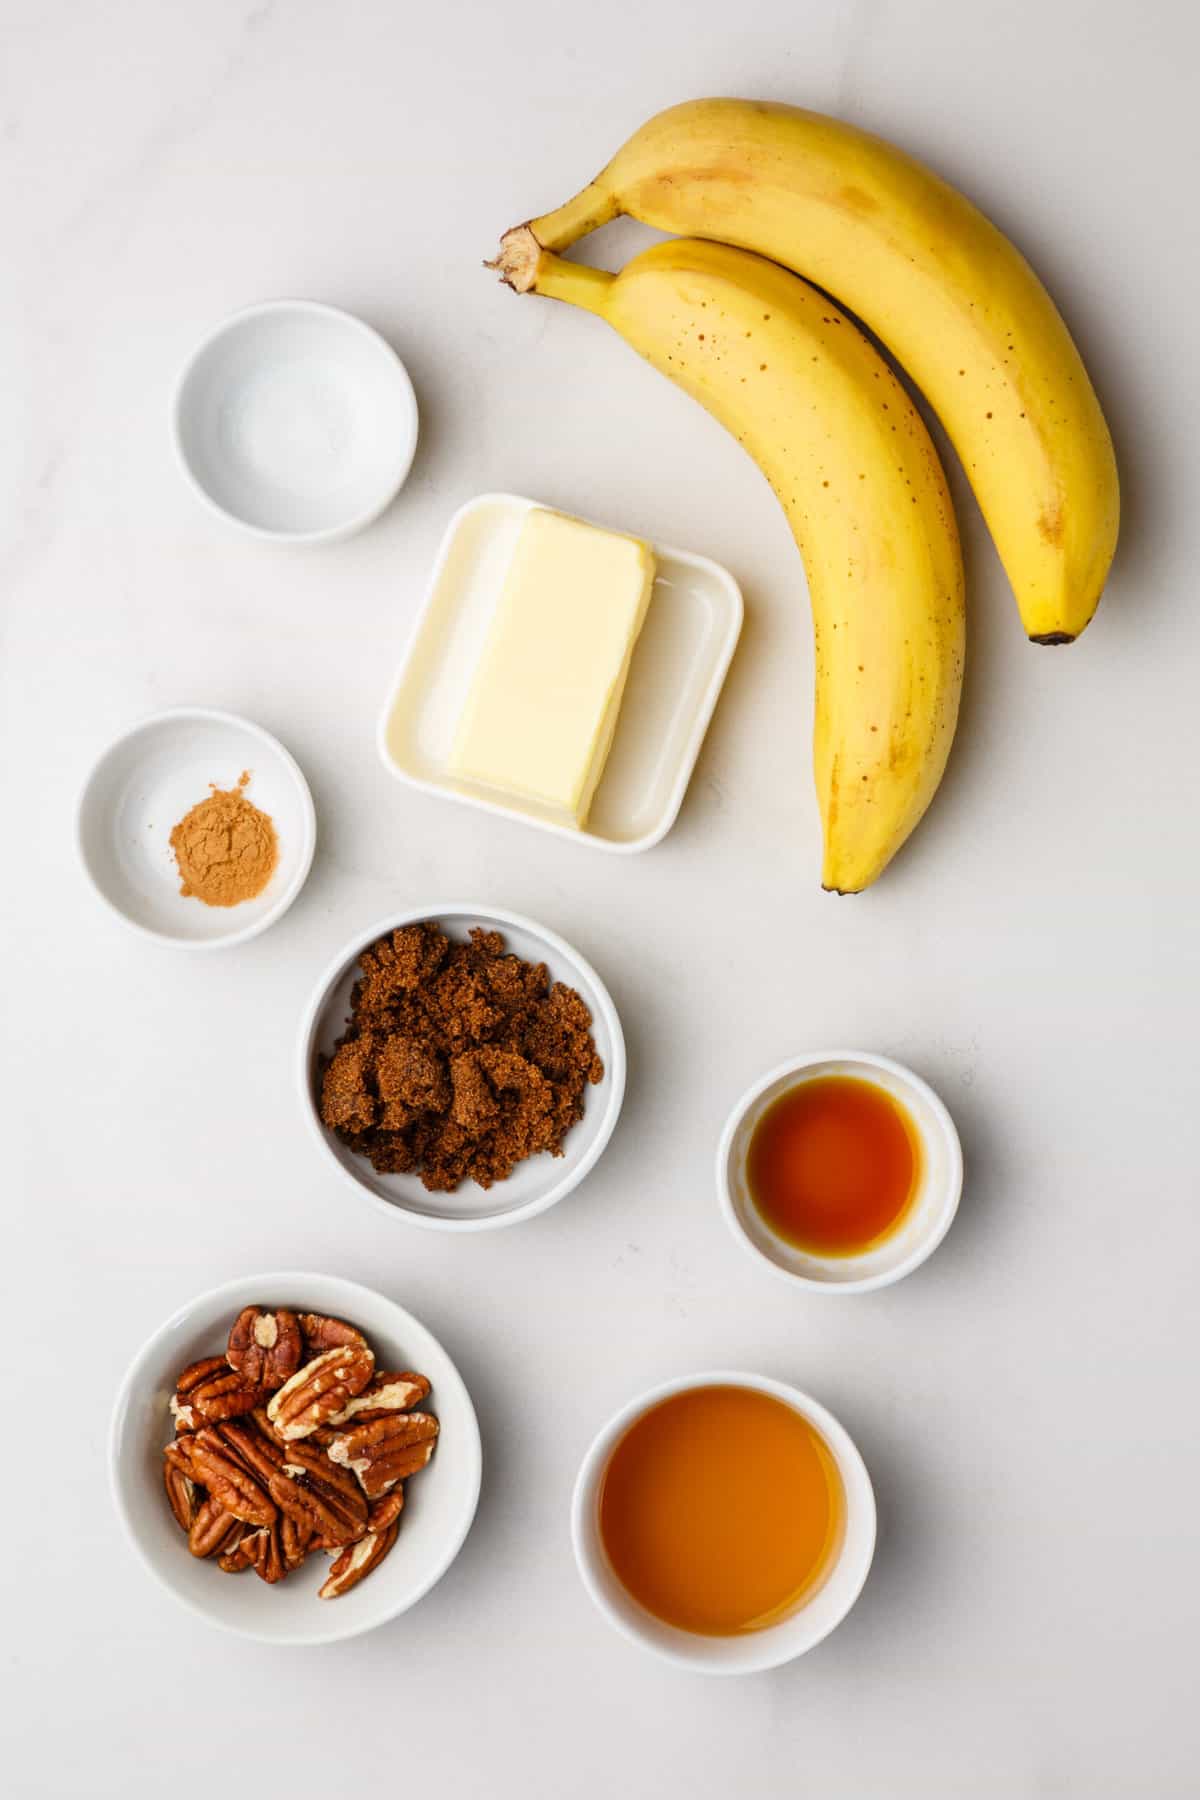 ingredients to make bananas foster